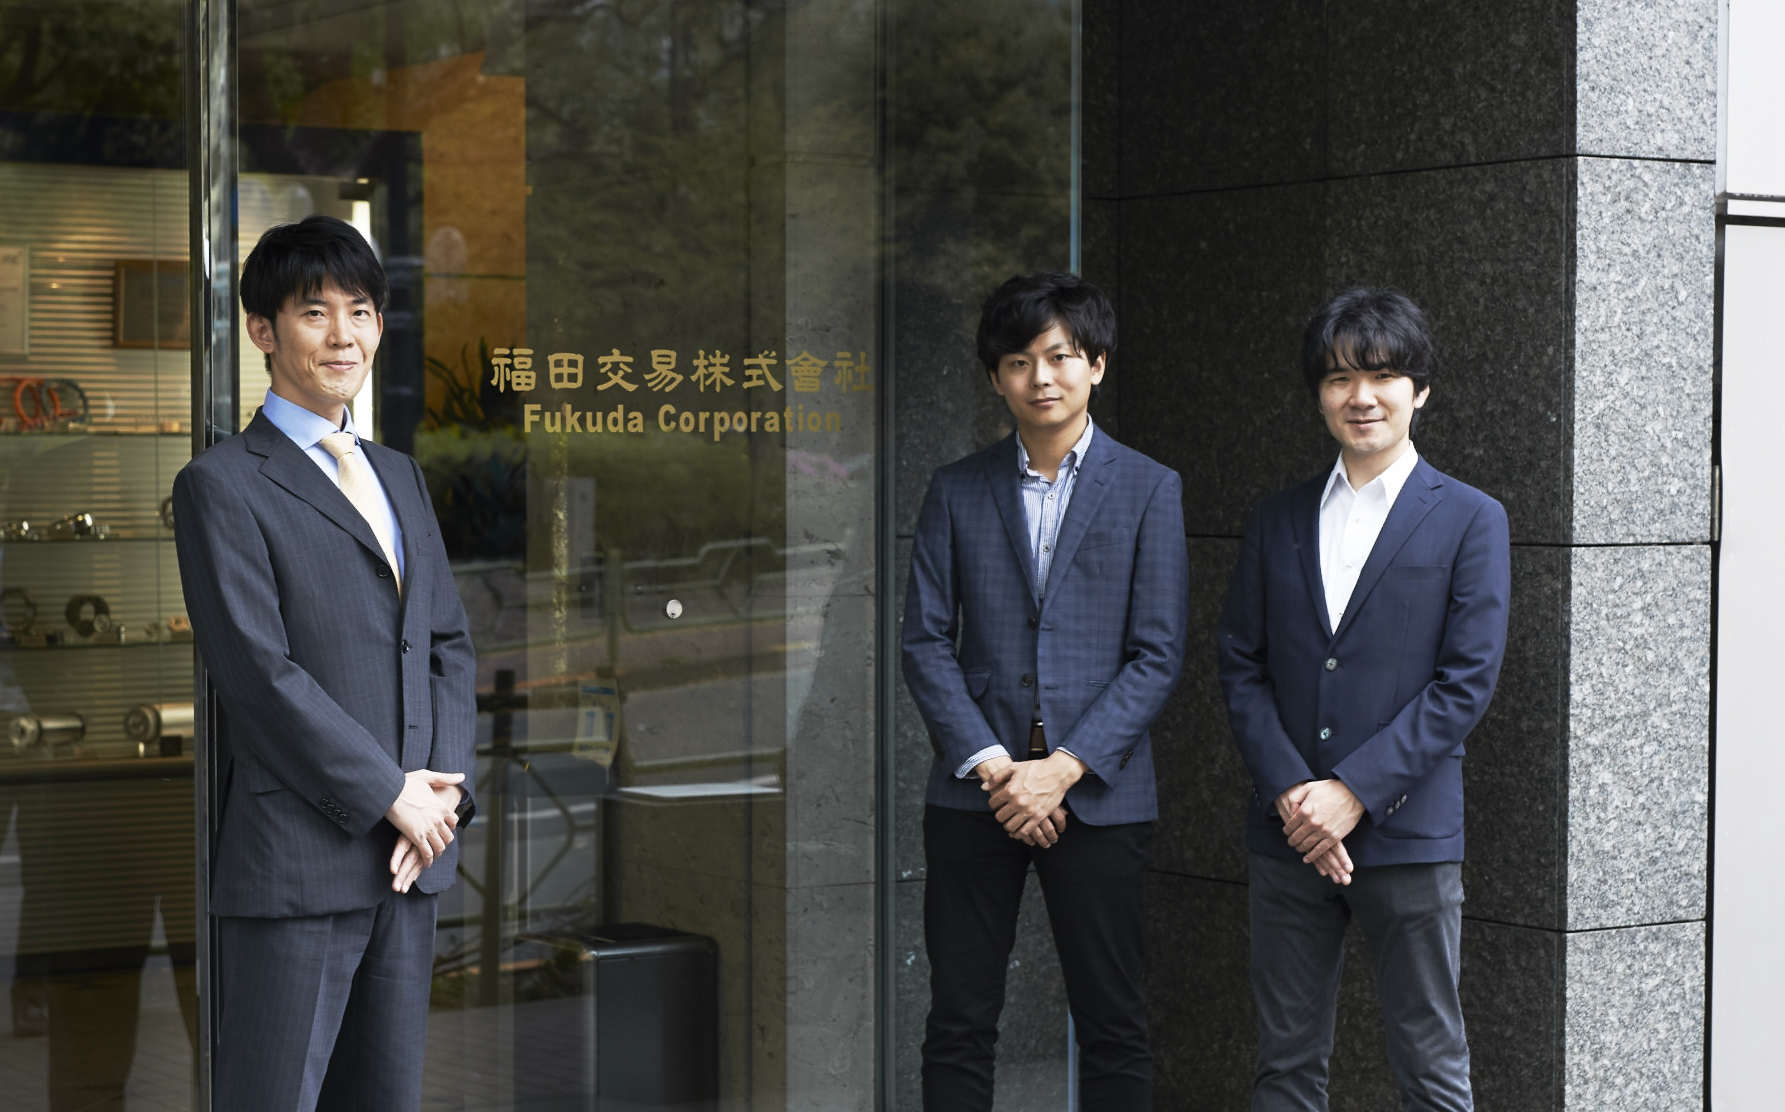 福田交易株式会社の担当者さまとナイルのコンサルタント2人が写った写真